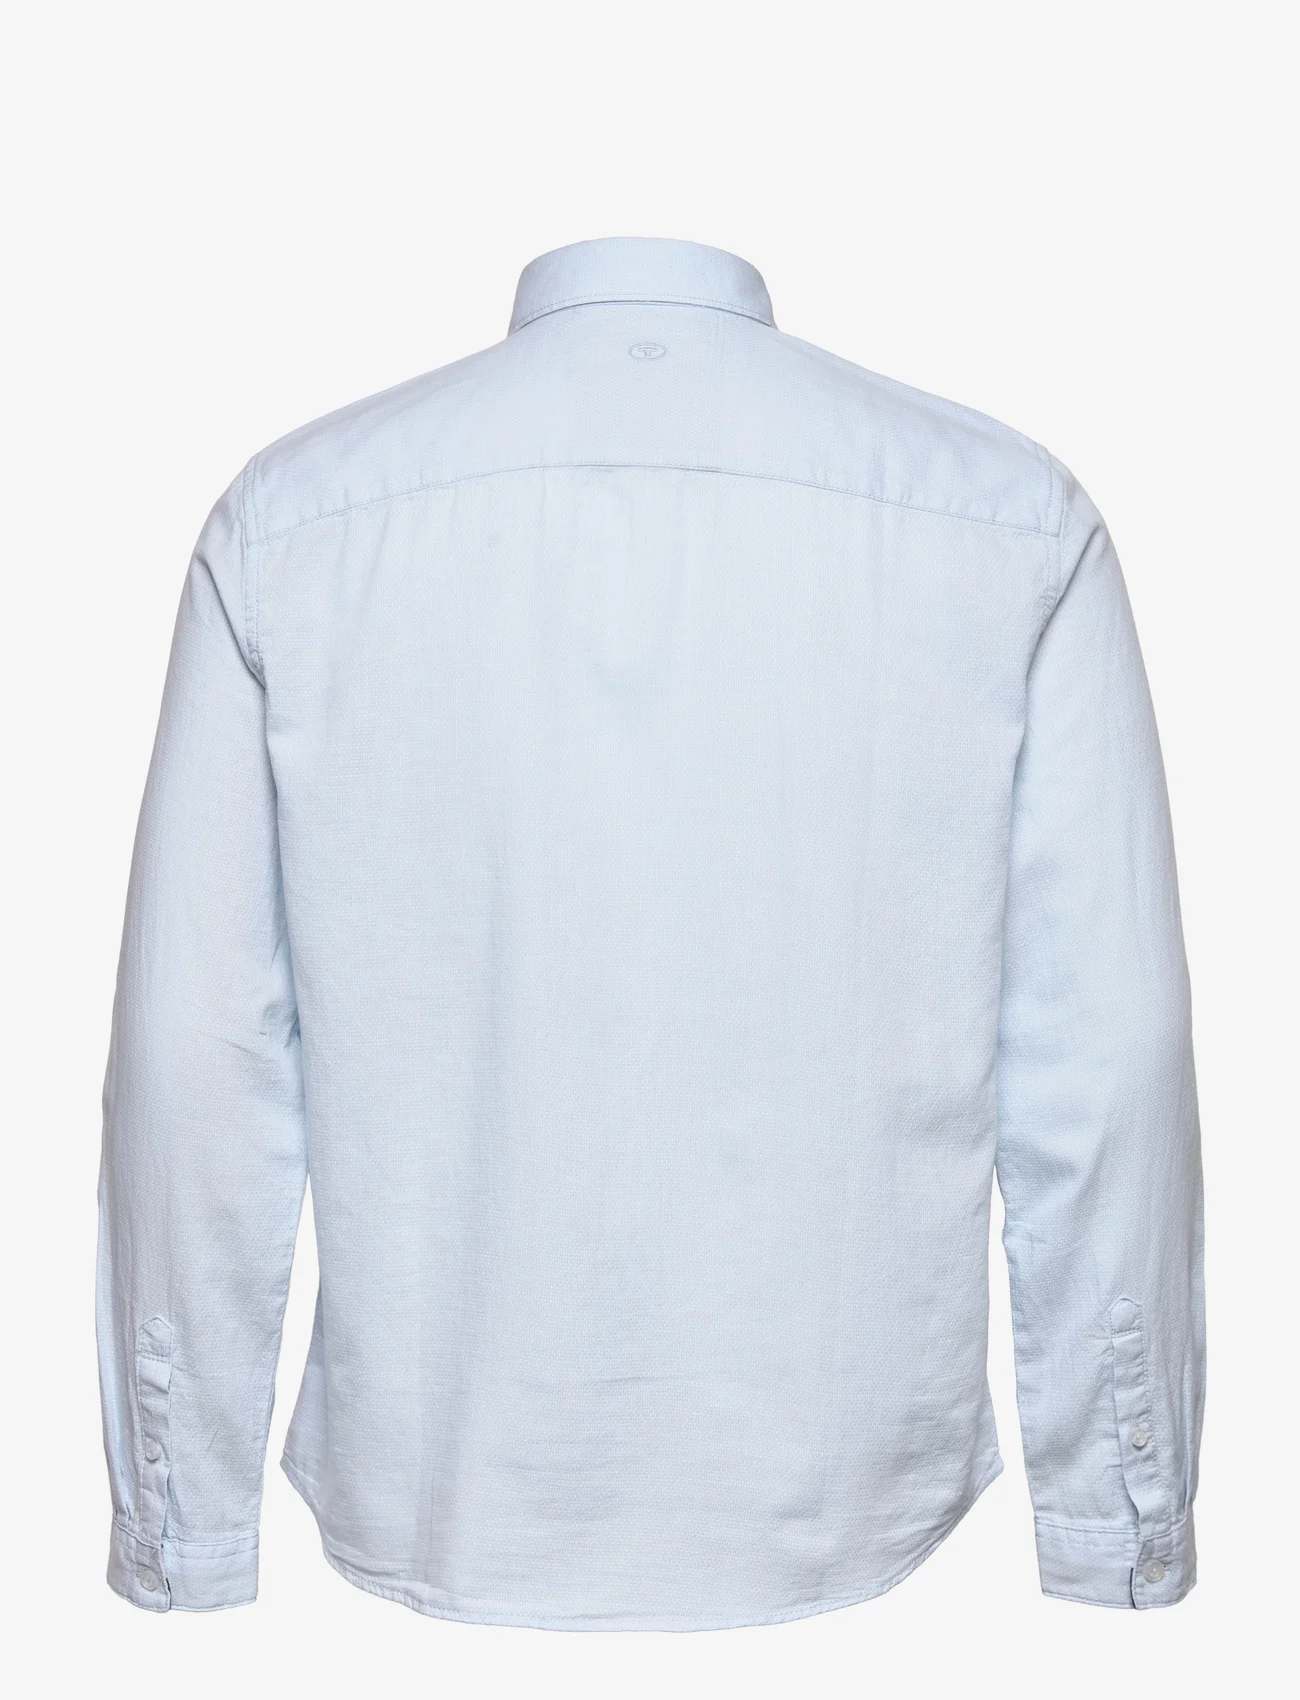 Tom Tailor - structured shirt - basic skjorter - light blue white structure - 1